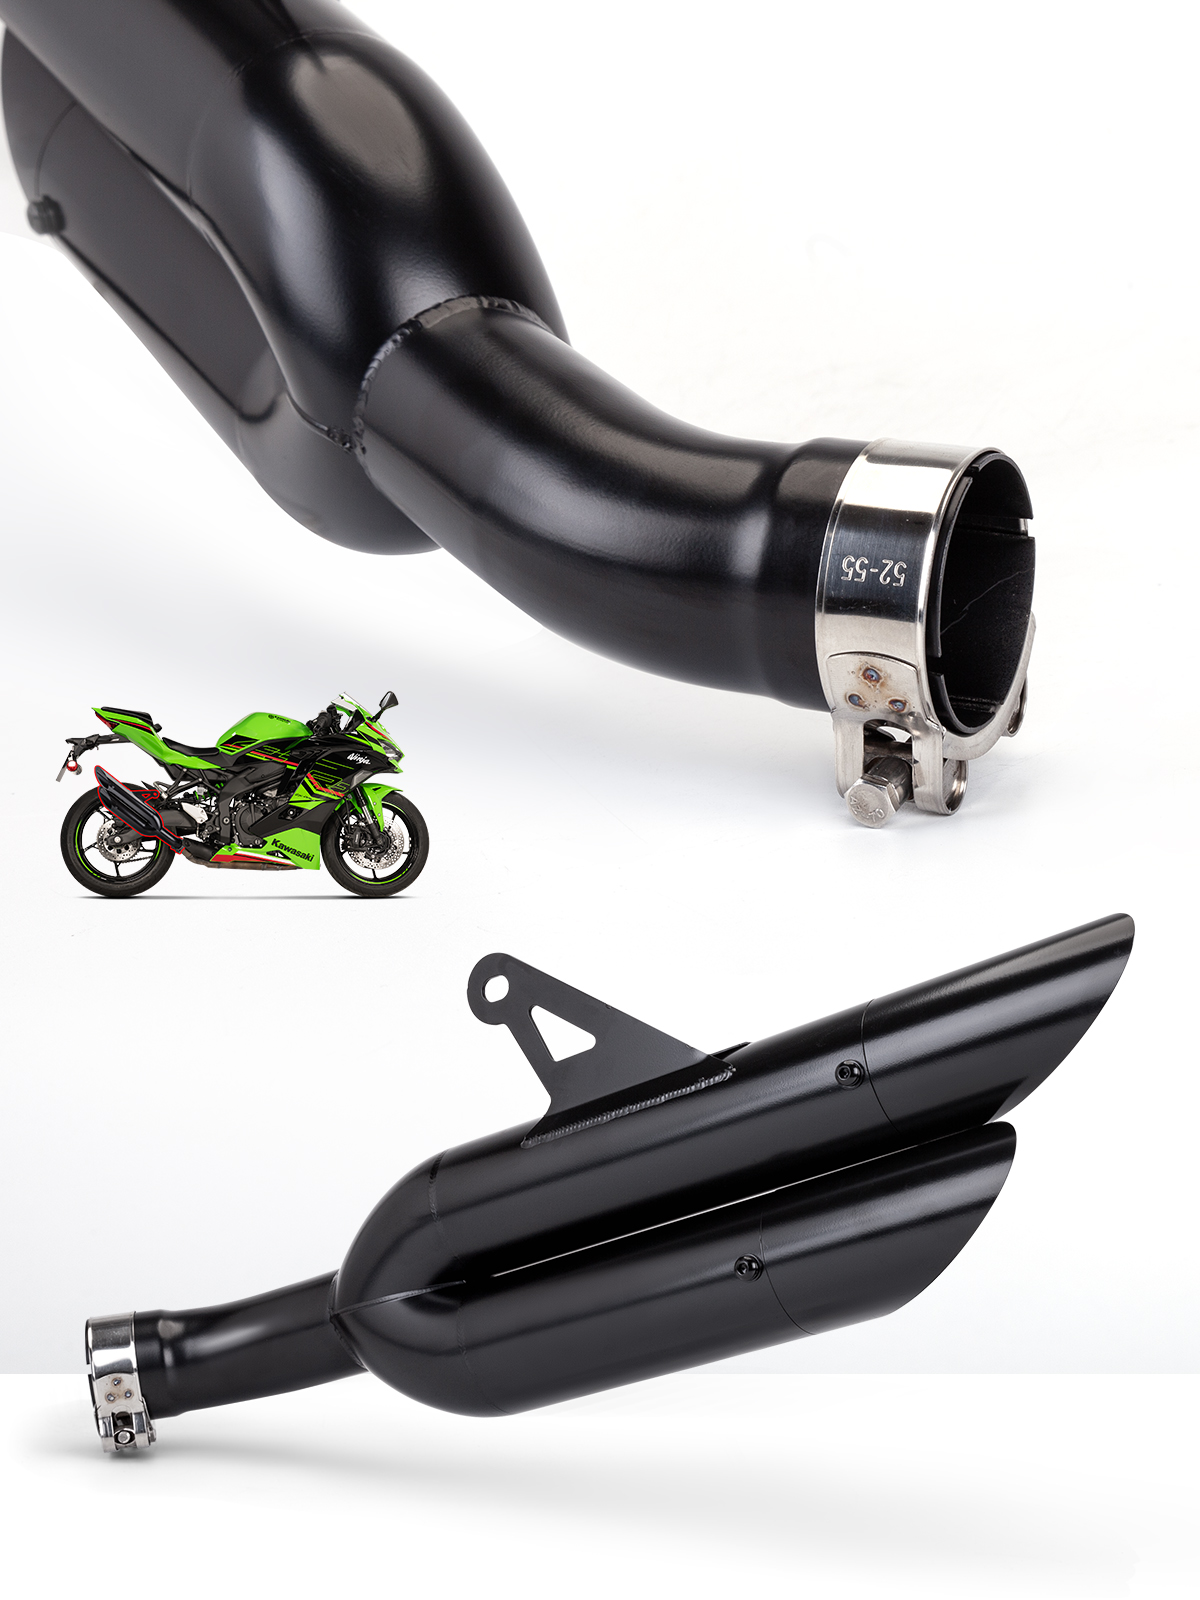 适用于摩托车改装排气管ZX4R 一体中尾段双出排气管 原装无损直上